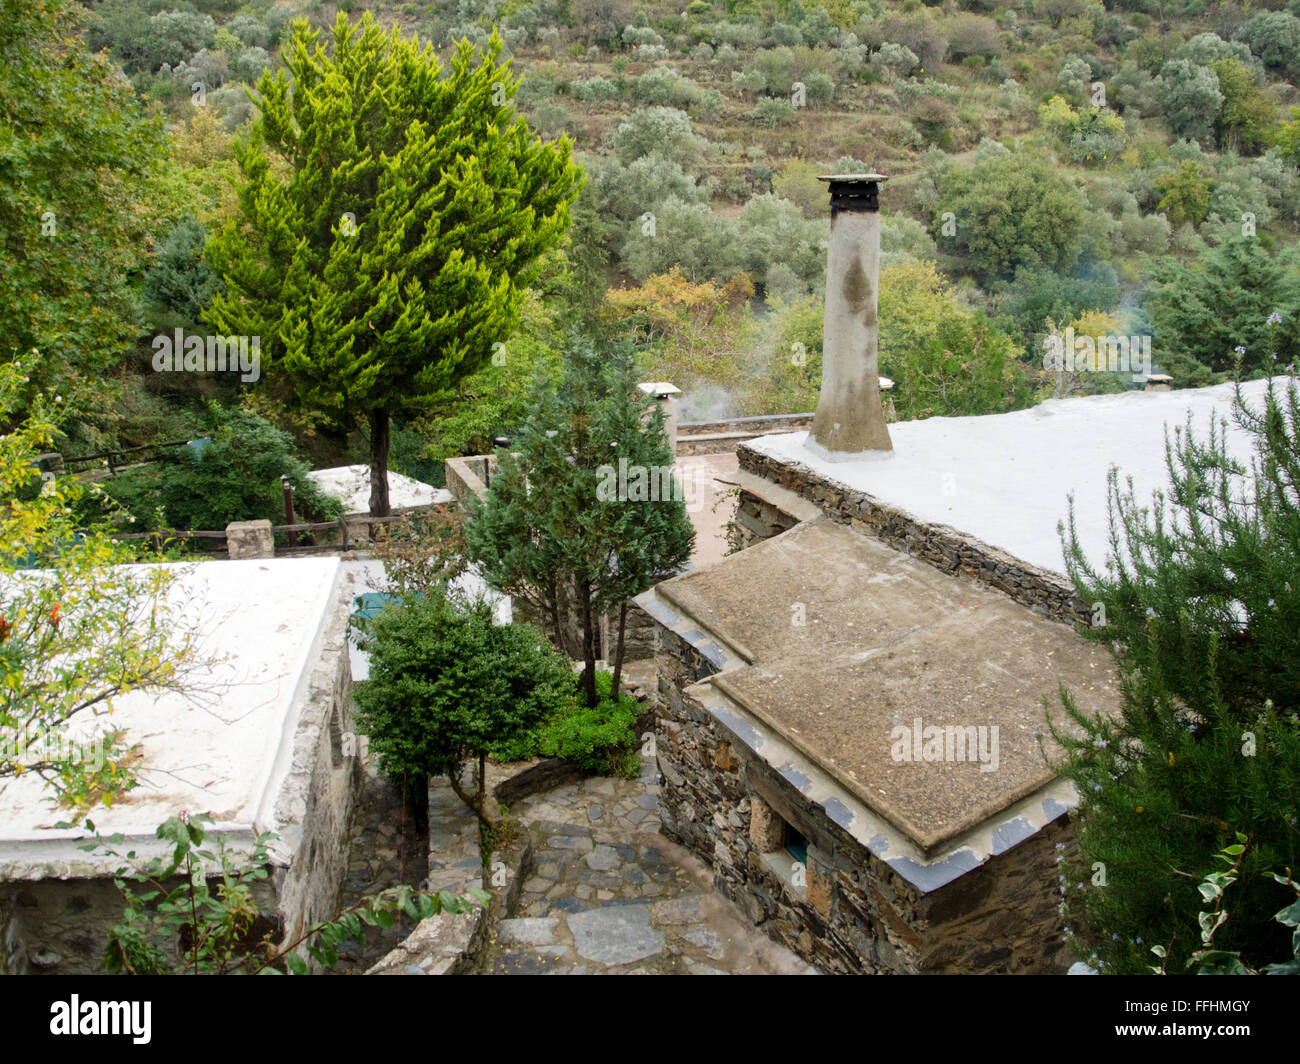 Griechenland, Kreta, Milia nördlich von Paleochora, erstes Öko-Dorf Griechenlands mit Vorzeigecharakter. Stock Photo